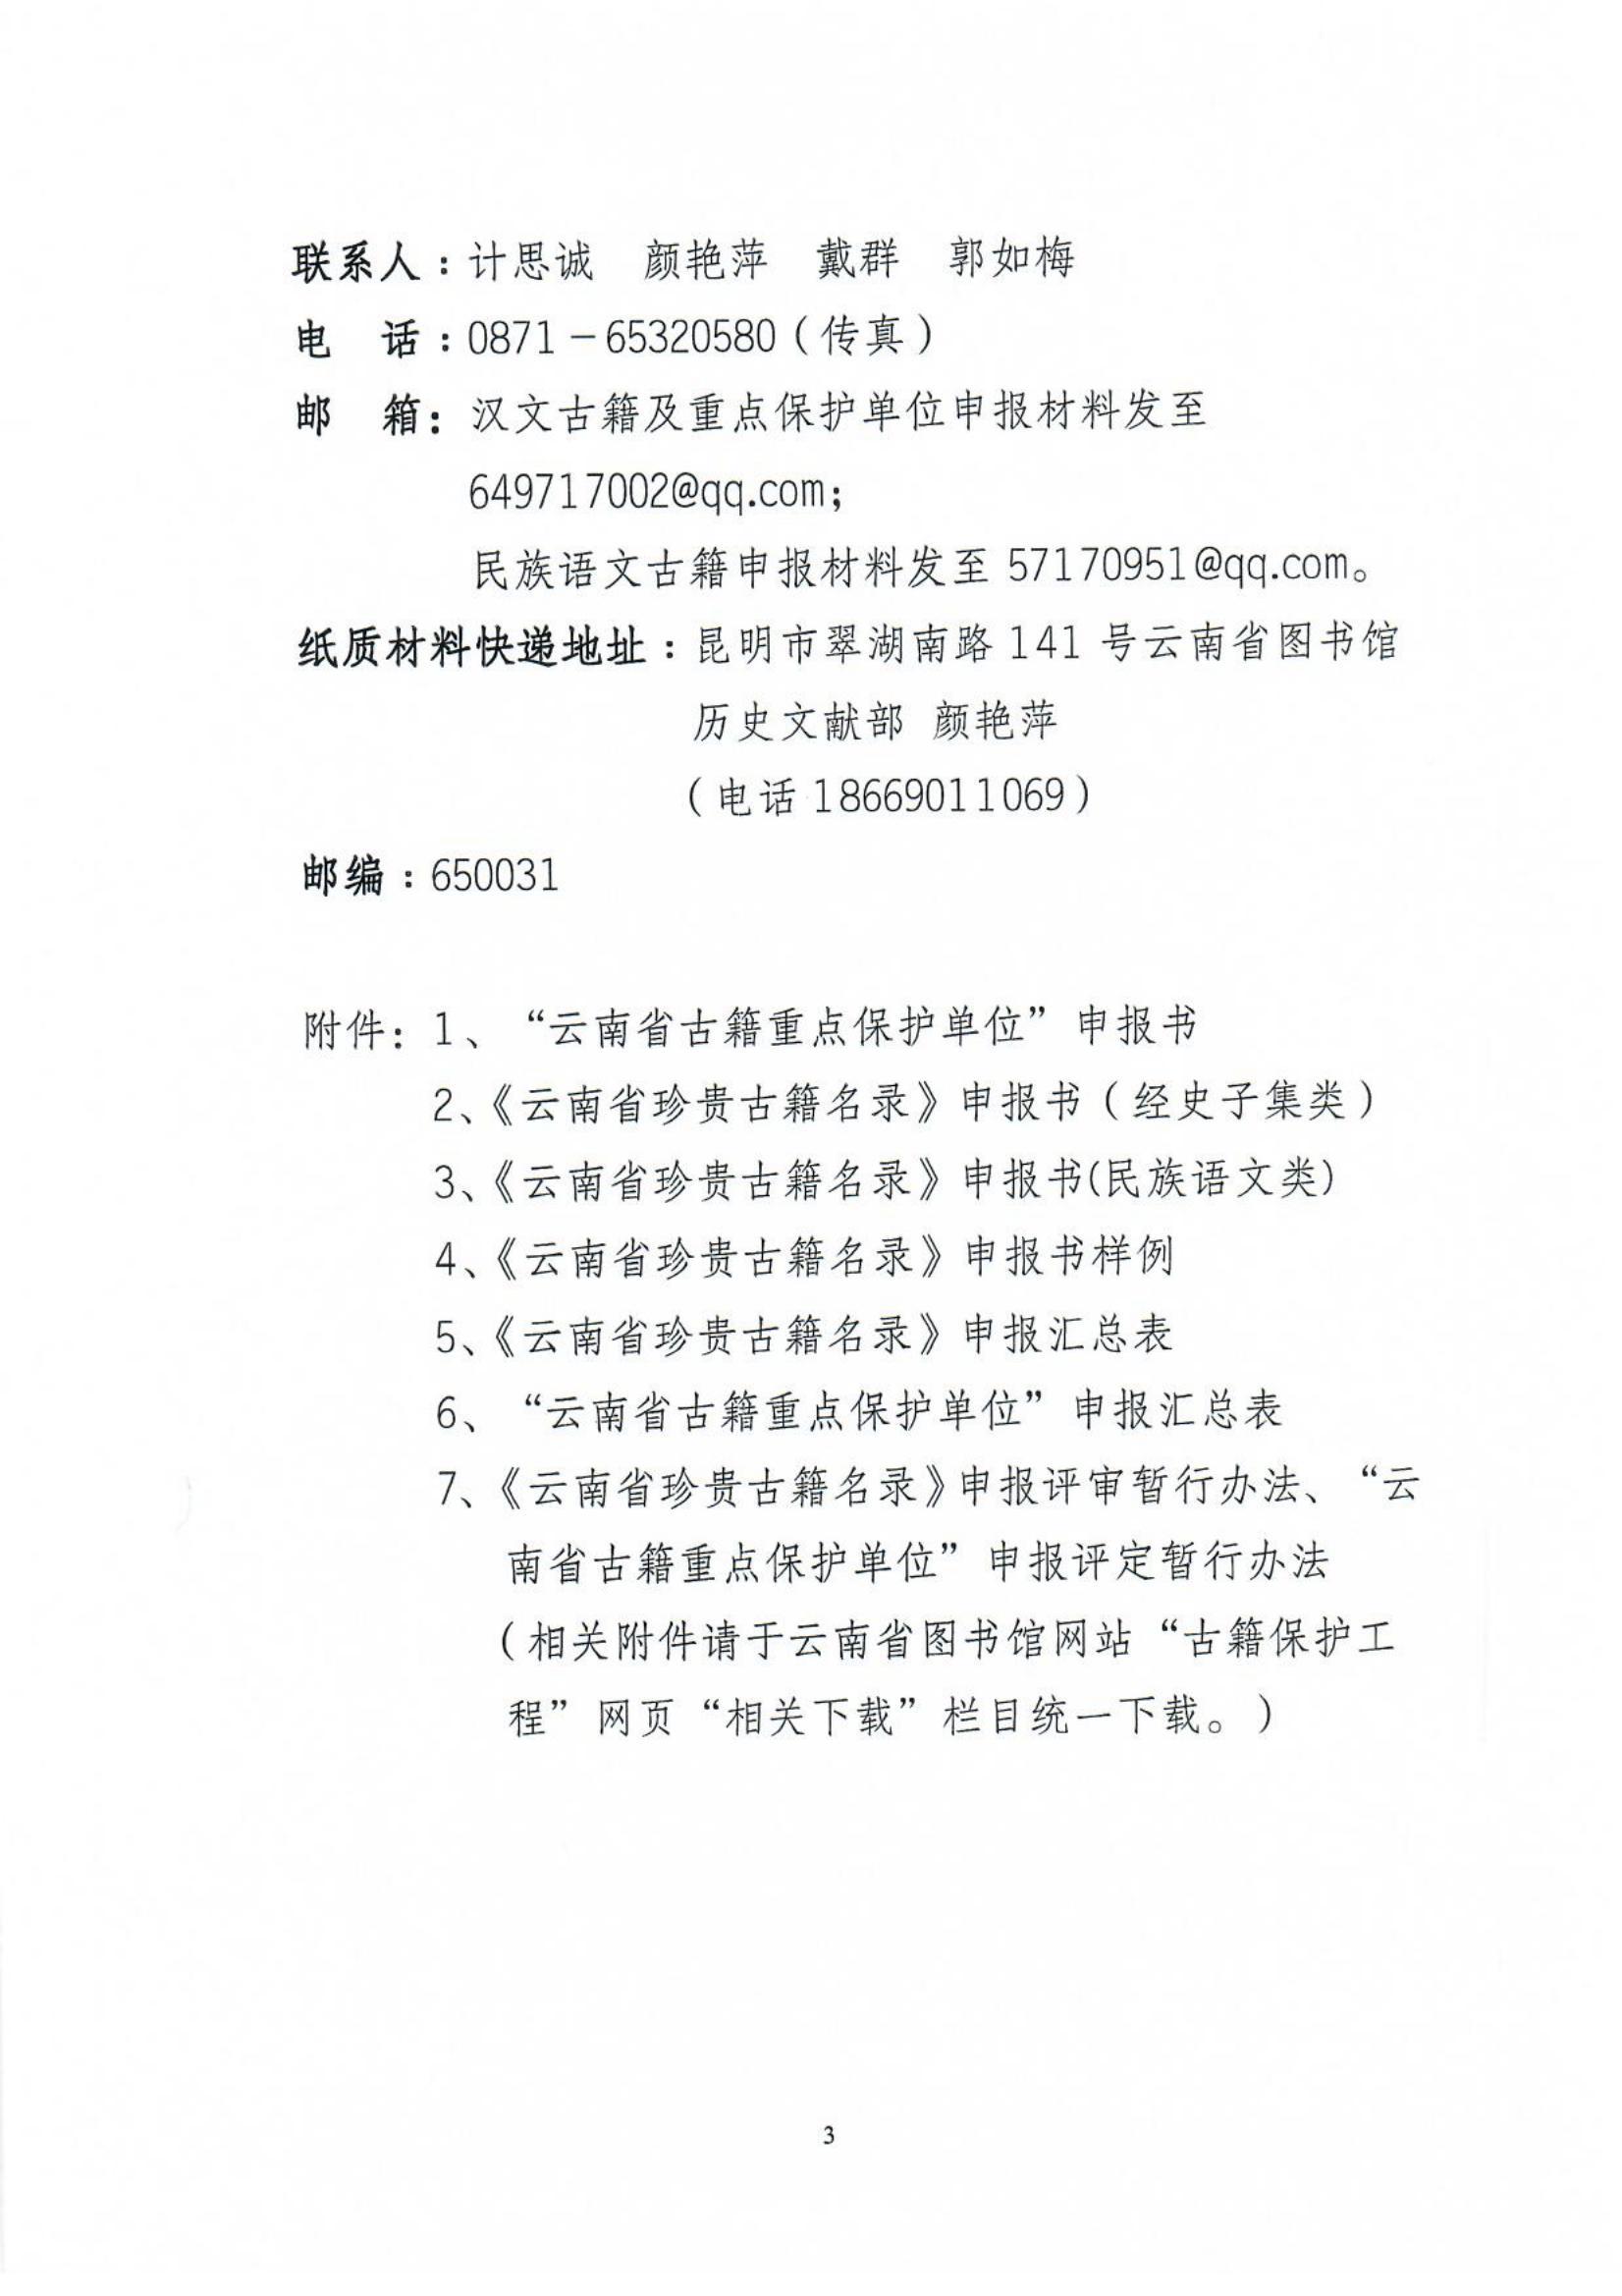 《云南省珍贵古籍名录》“ 云南省古籍重点保护单位”申报通知